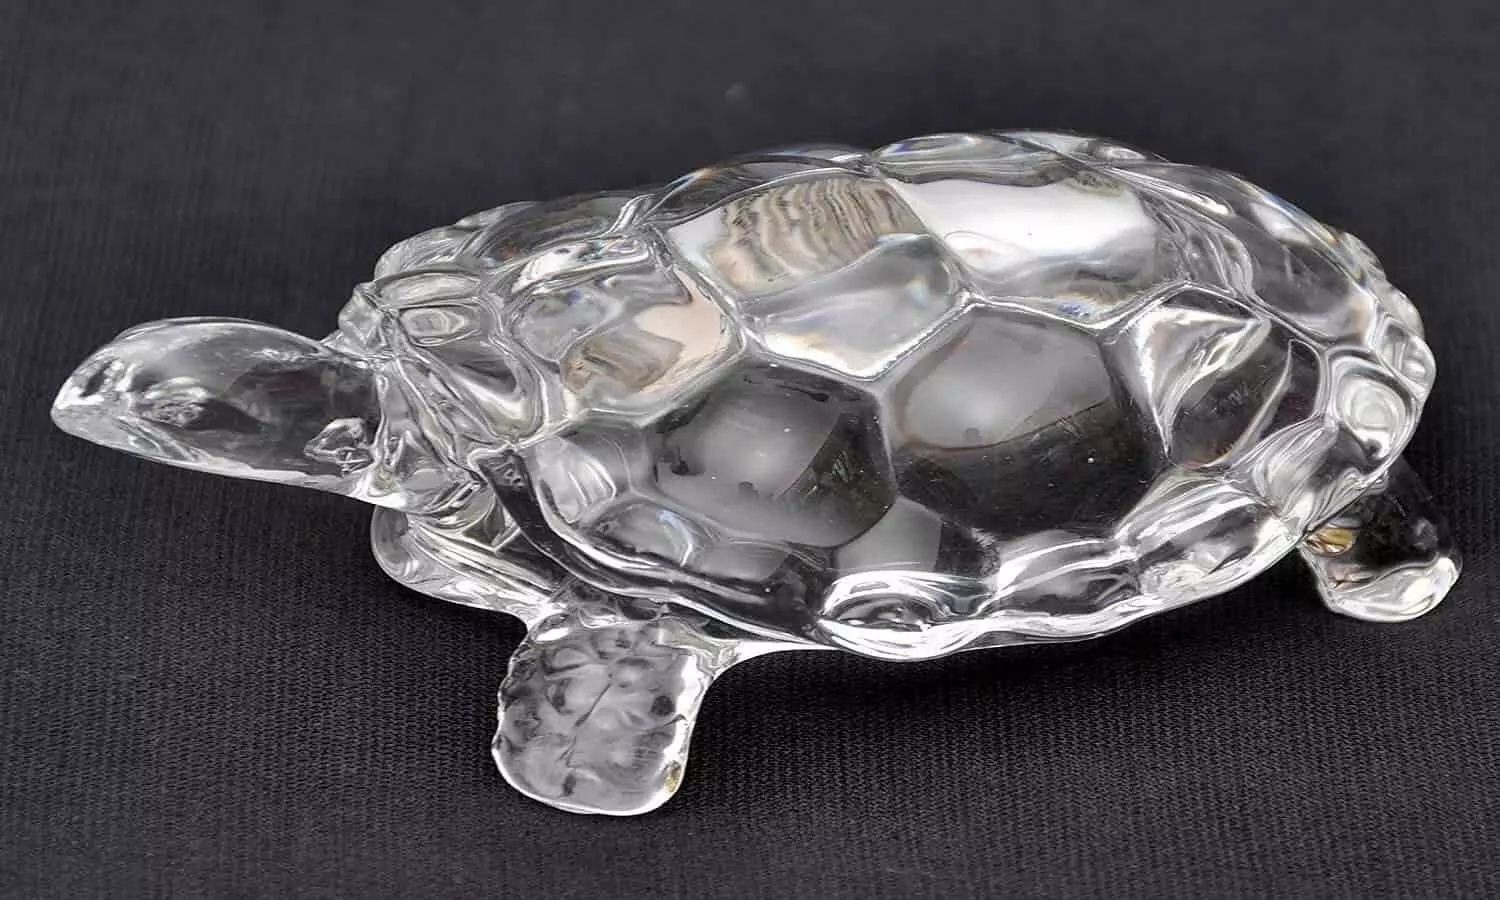 Crystal Turtle Benefits: क्रिस्टल का कछुआ आपको बना देगा अरबो-खरबो की प्रापर्टी का मालिक, खुद बिजनेमैन अडानी ने अपने घर में रखा है